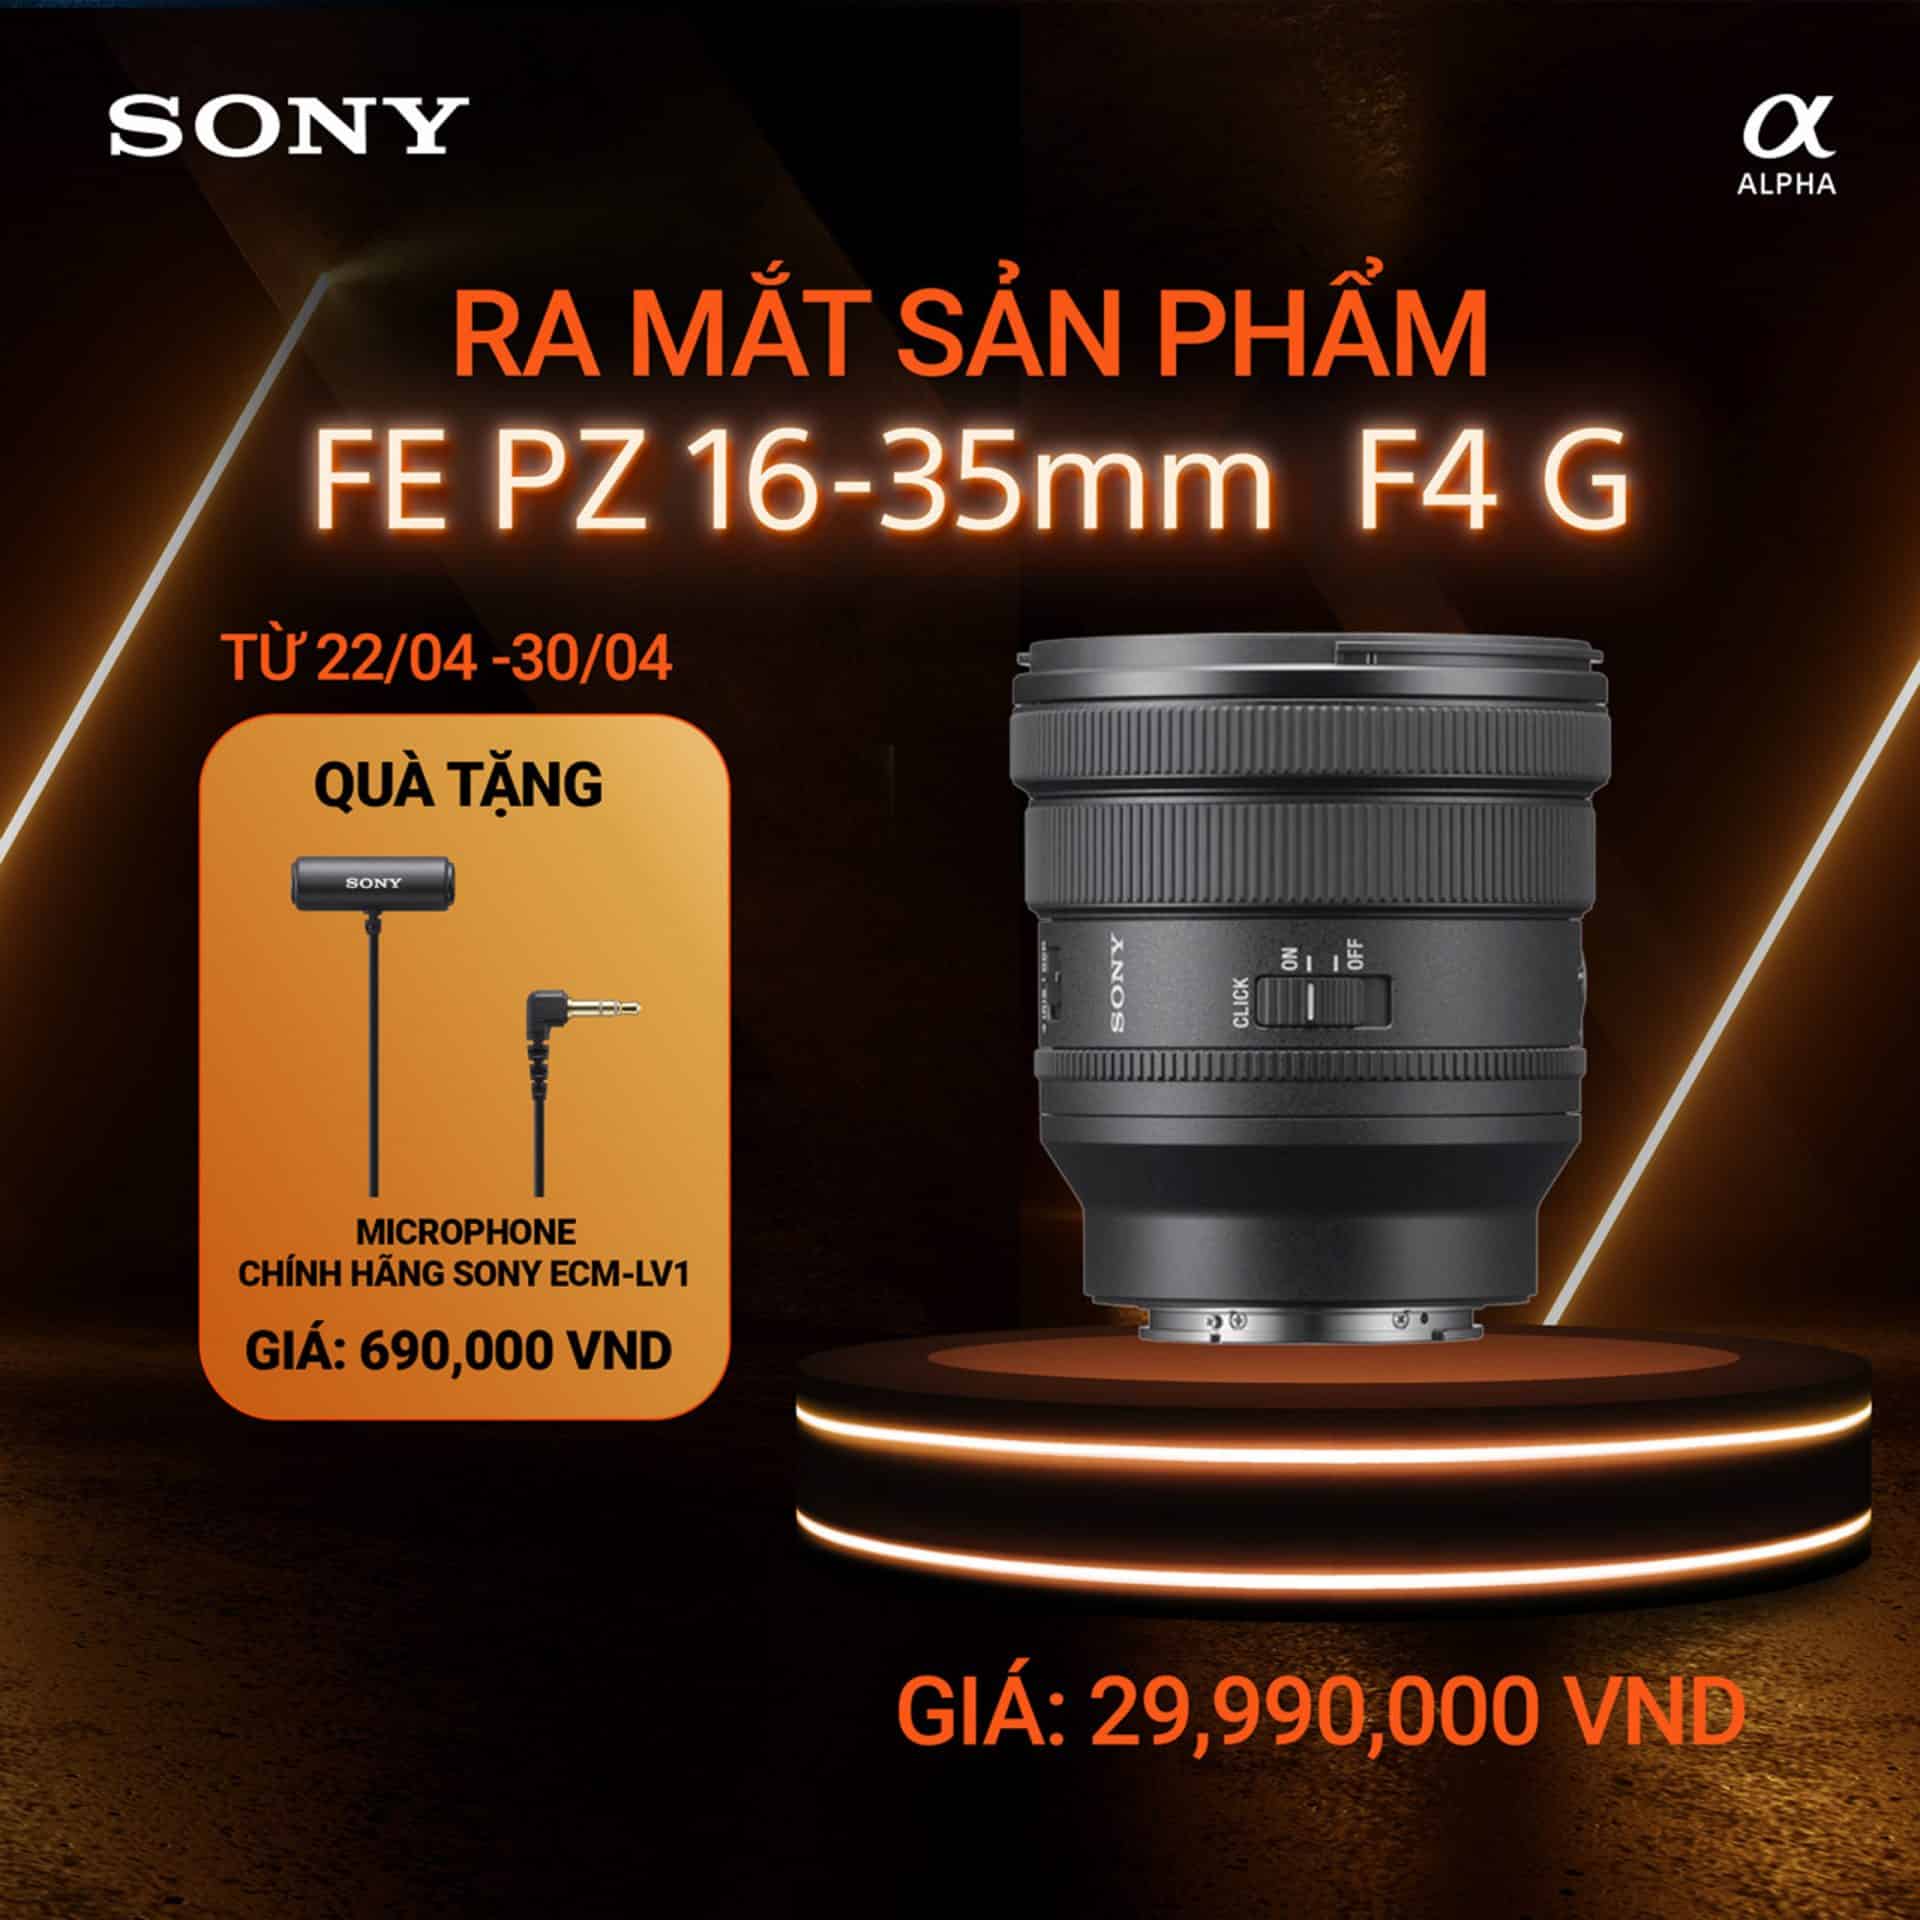 Sony ra mắt chiếc ống kính zoom FE PZ 16-35mm F4 G gọn nhẹ với giá bán 29.990.000đ